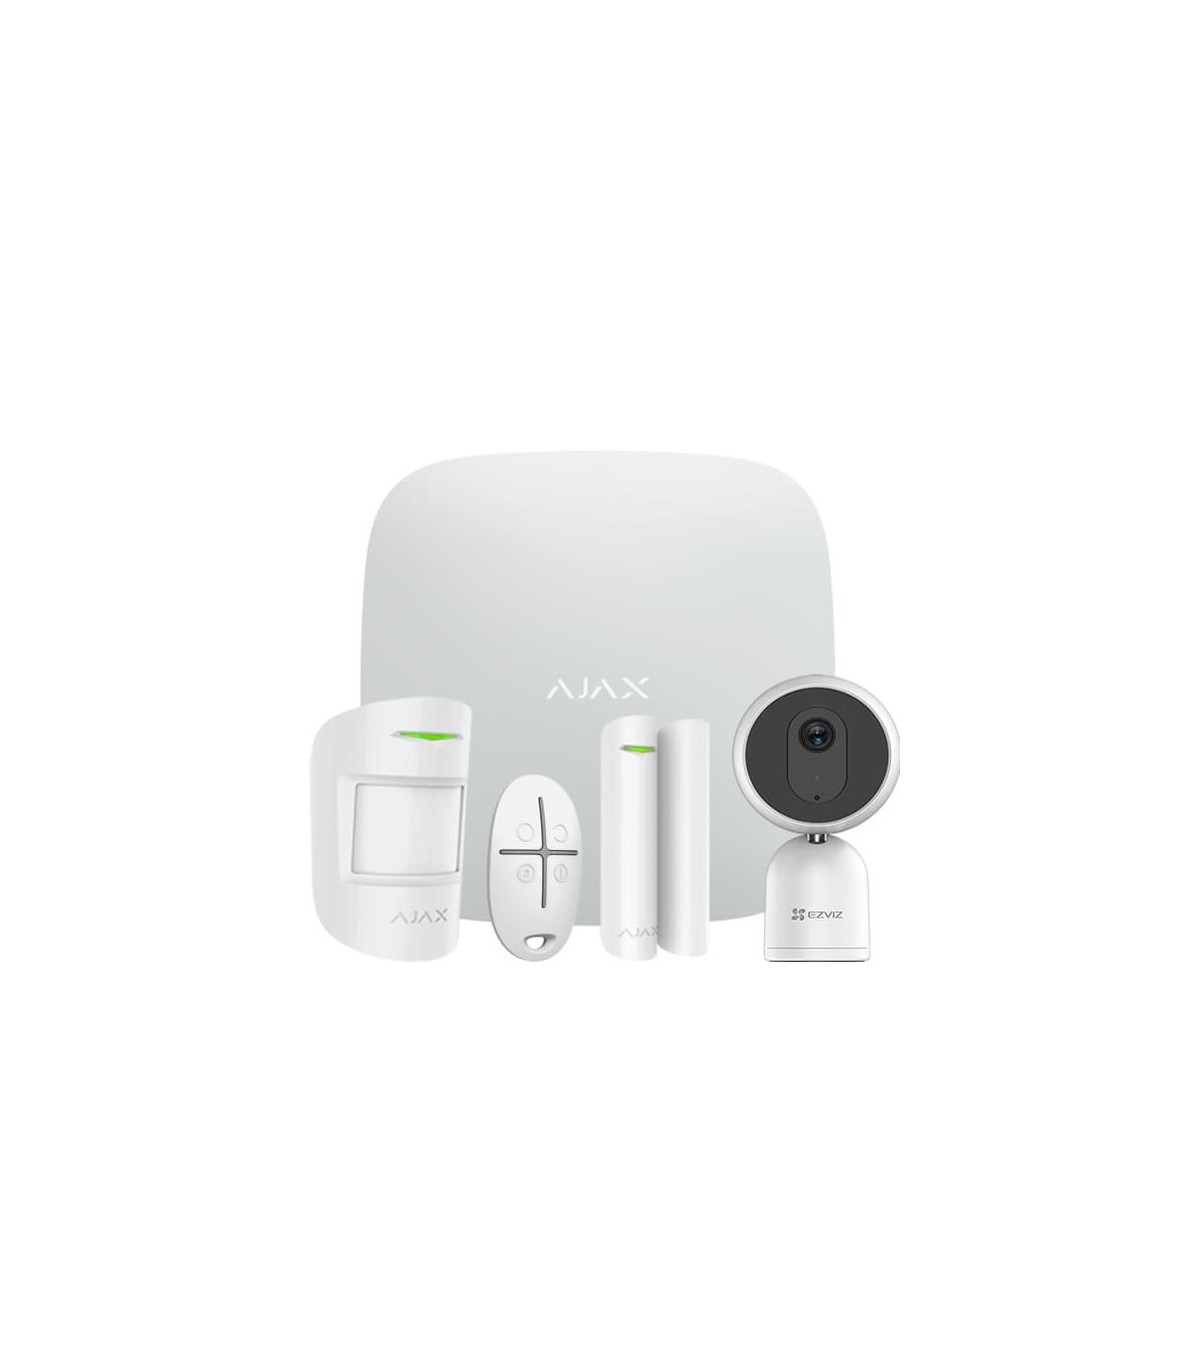 Ajax Alarme maison IP / GPRS avec caméra IP Wifi Dahua 4 mégapixels